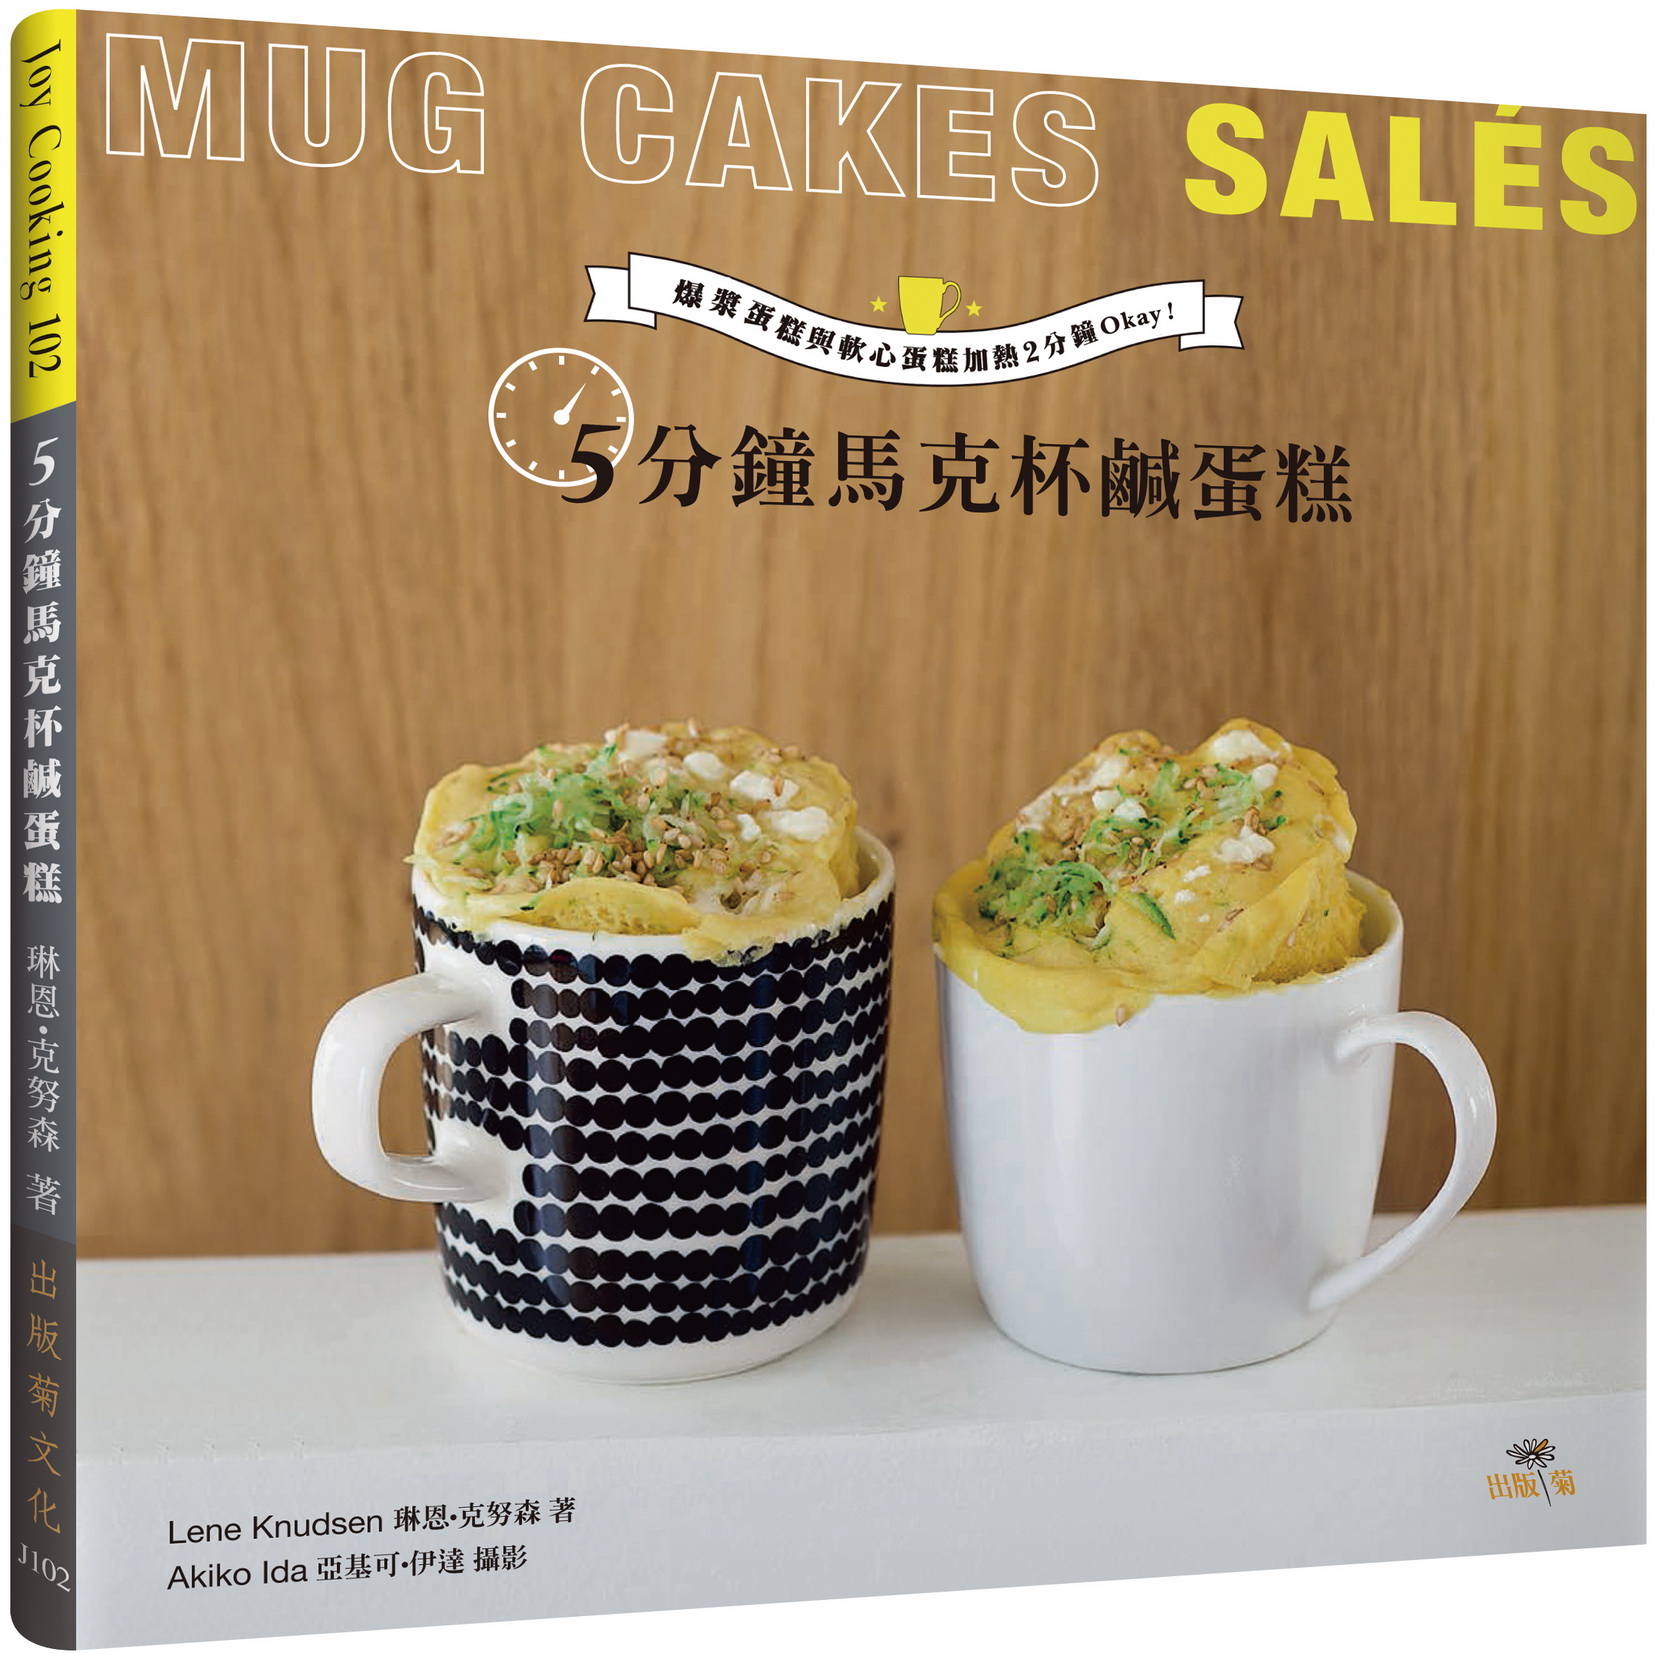  5分鐘馬克杯鹹蛋糕Mug Cakes Salés！爆紅歐美日！免烤免等不求人！